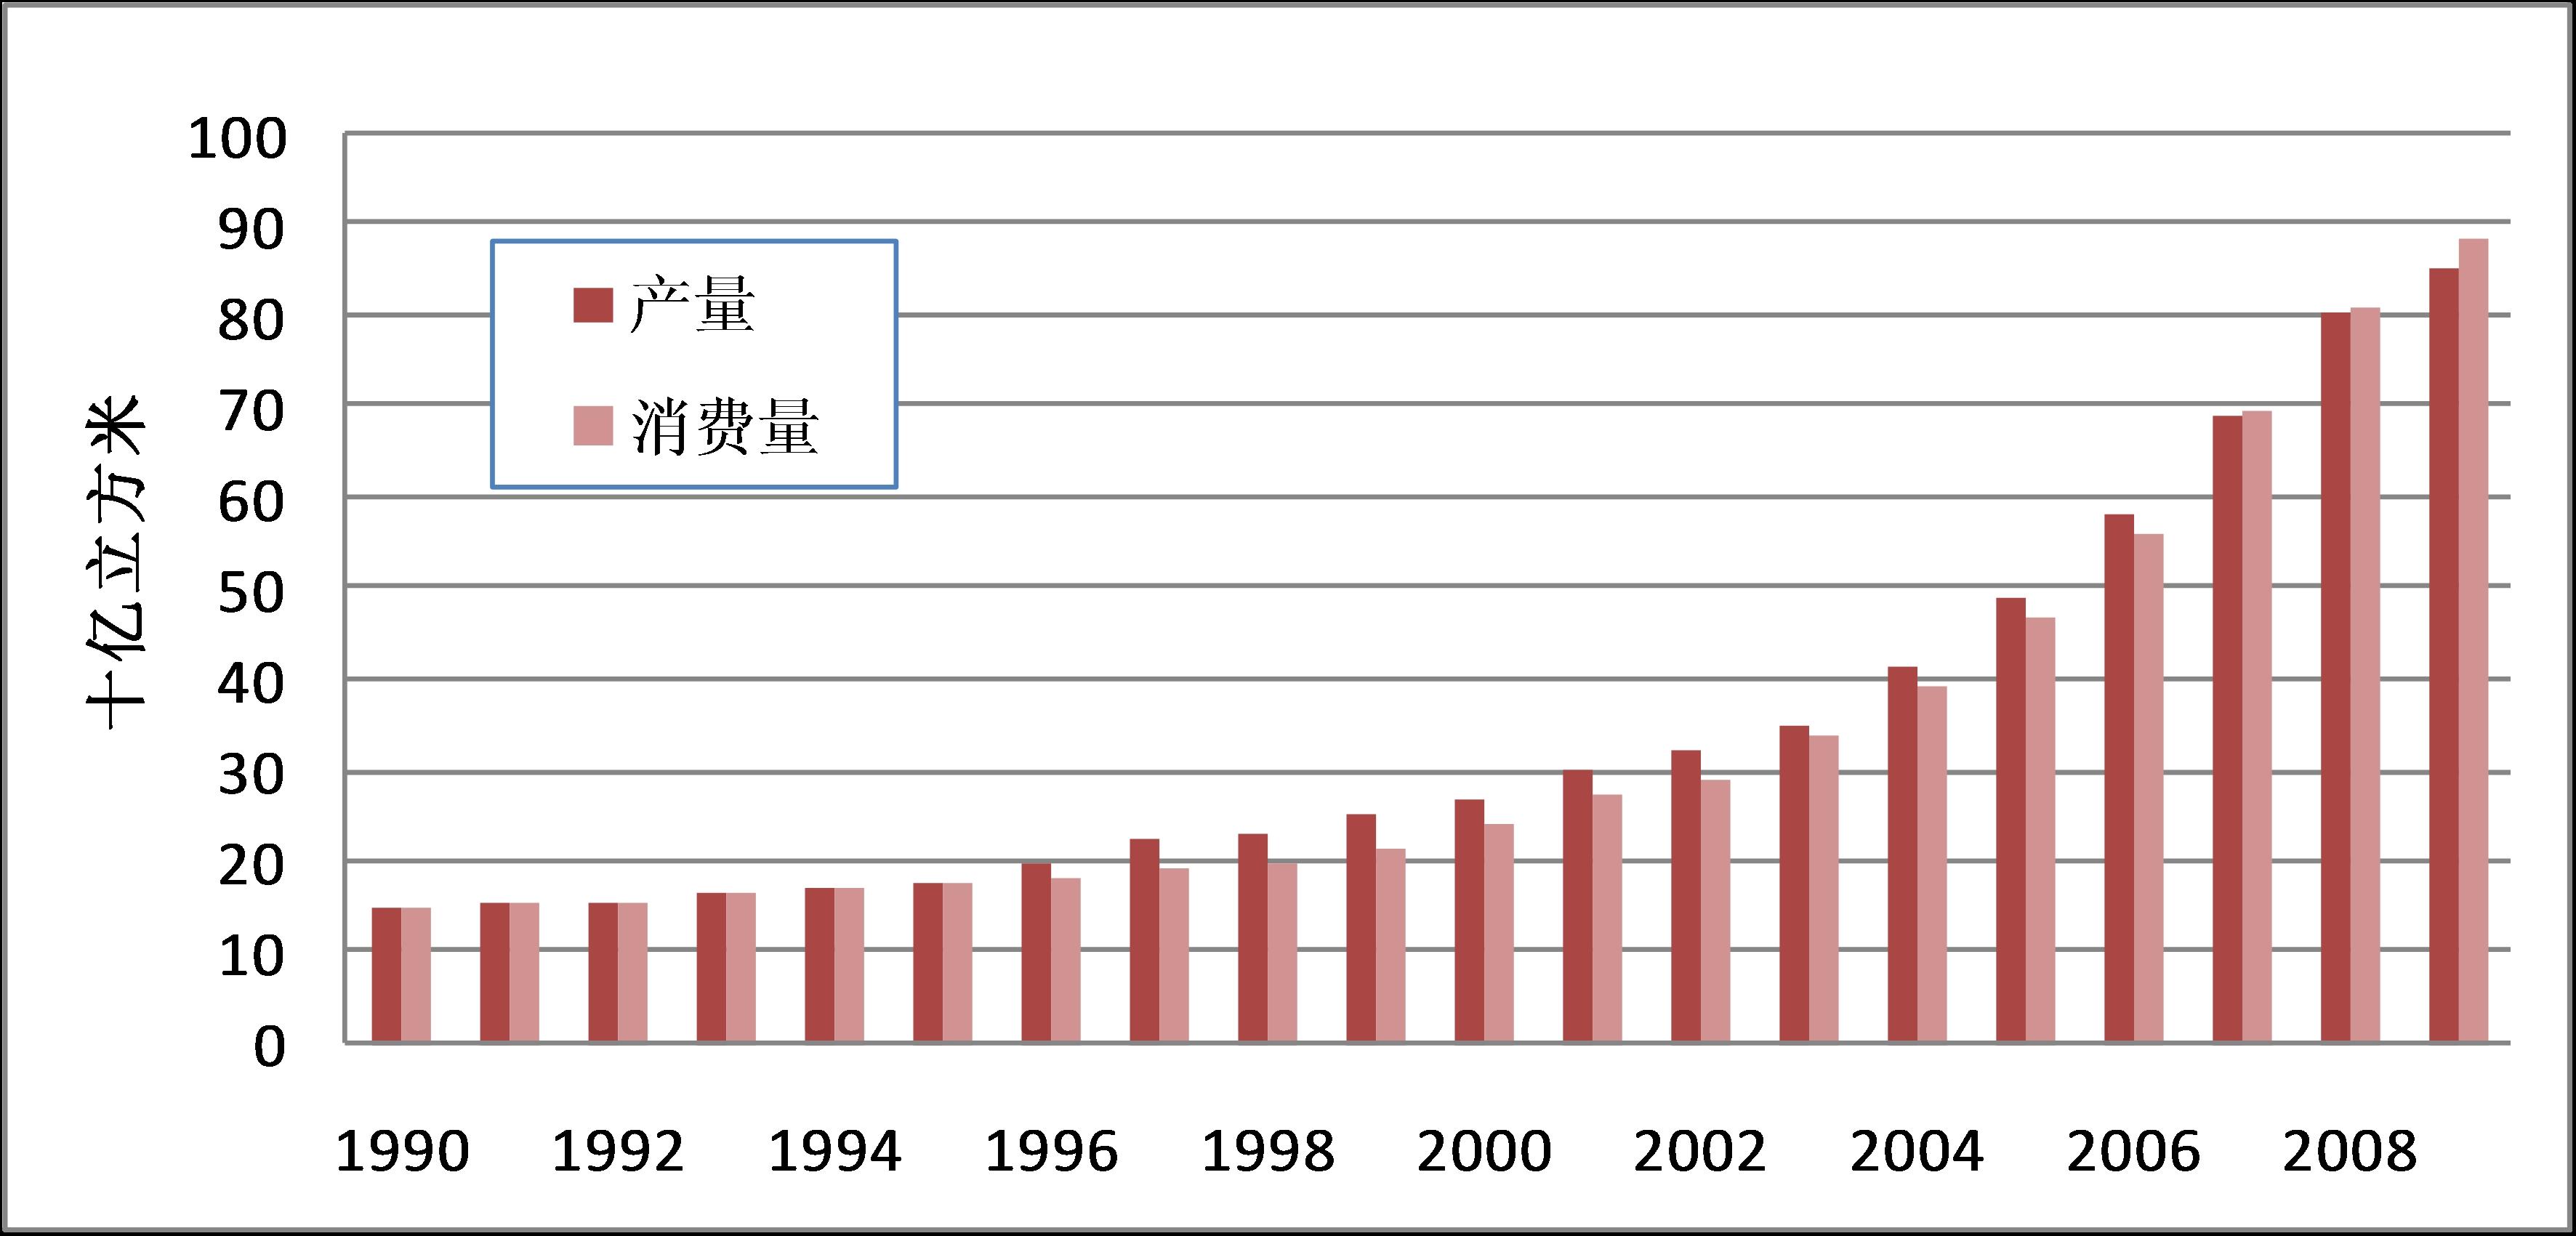 中国进口石油的主要来源国有哪些?各自的份额